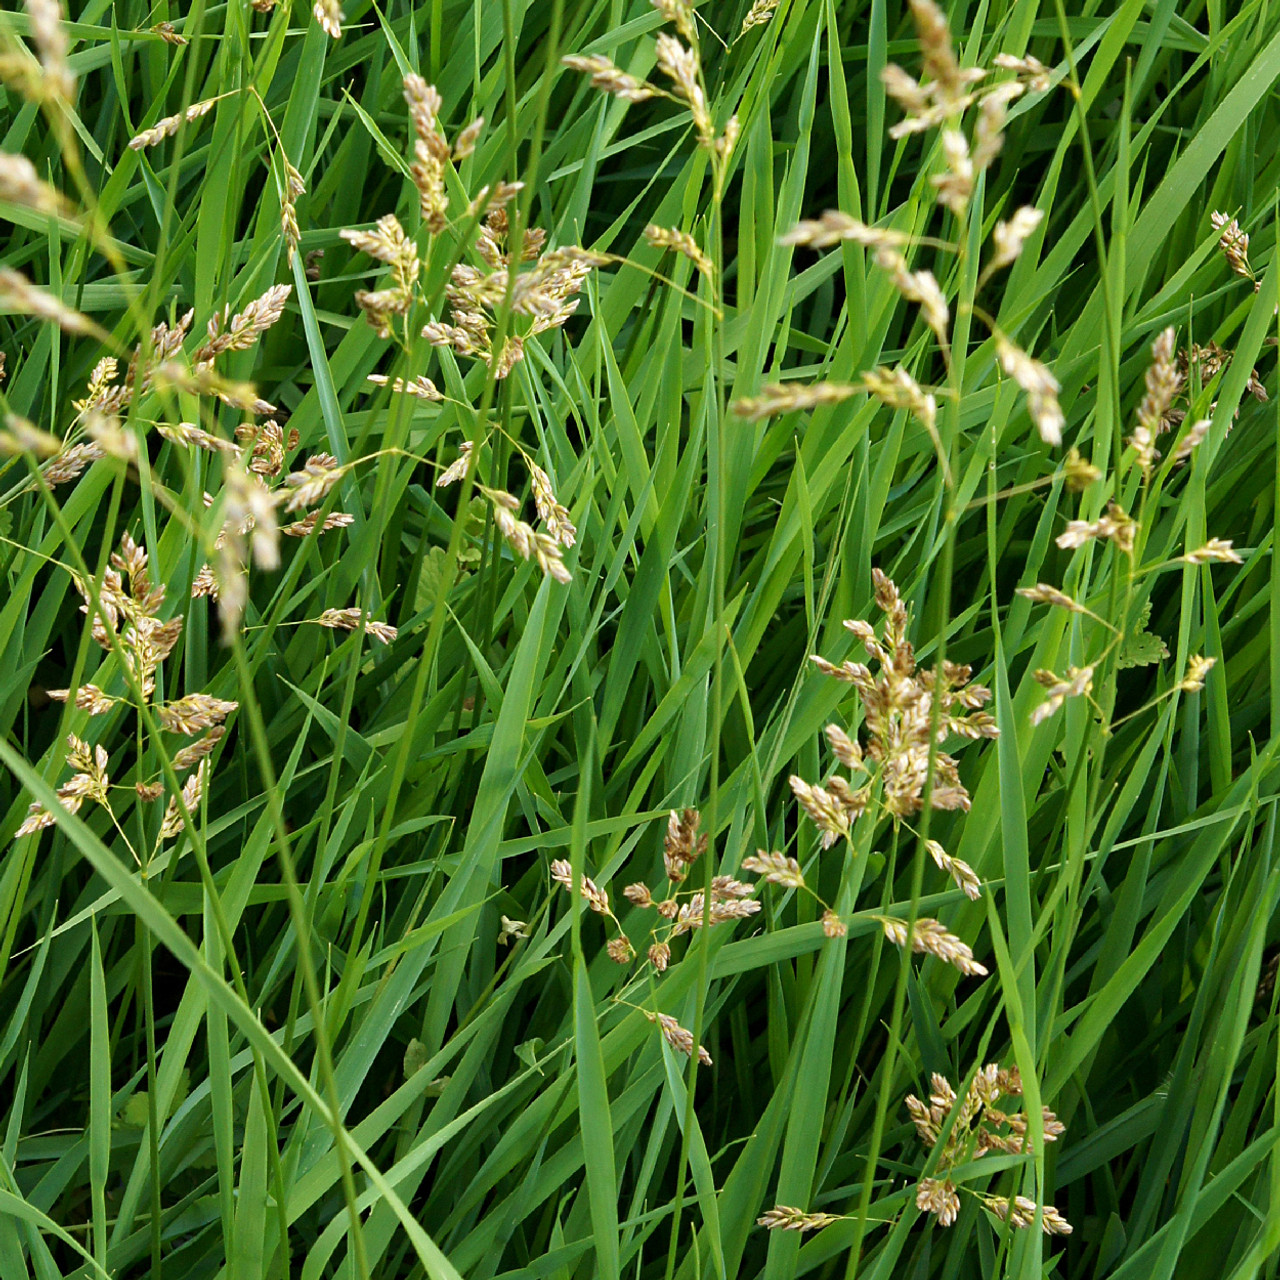 Sweetgrass Braid (Hierochloe odorata) - USA